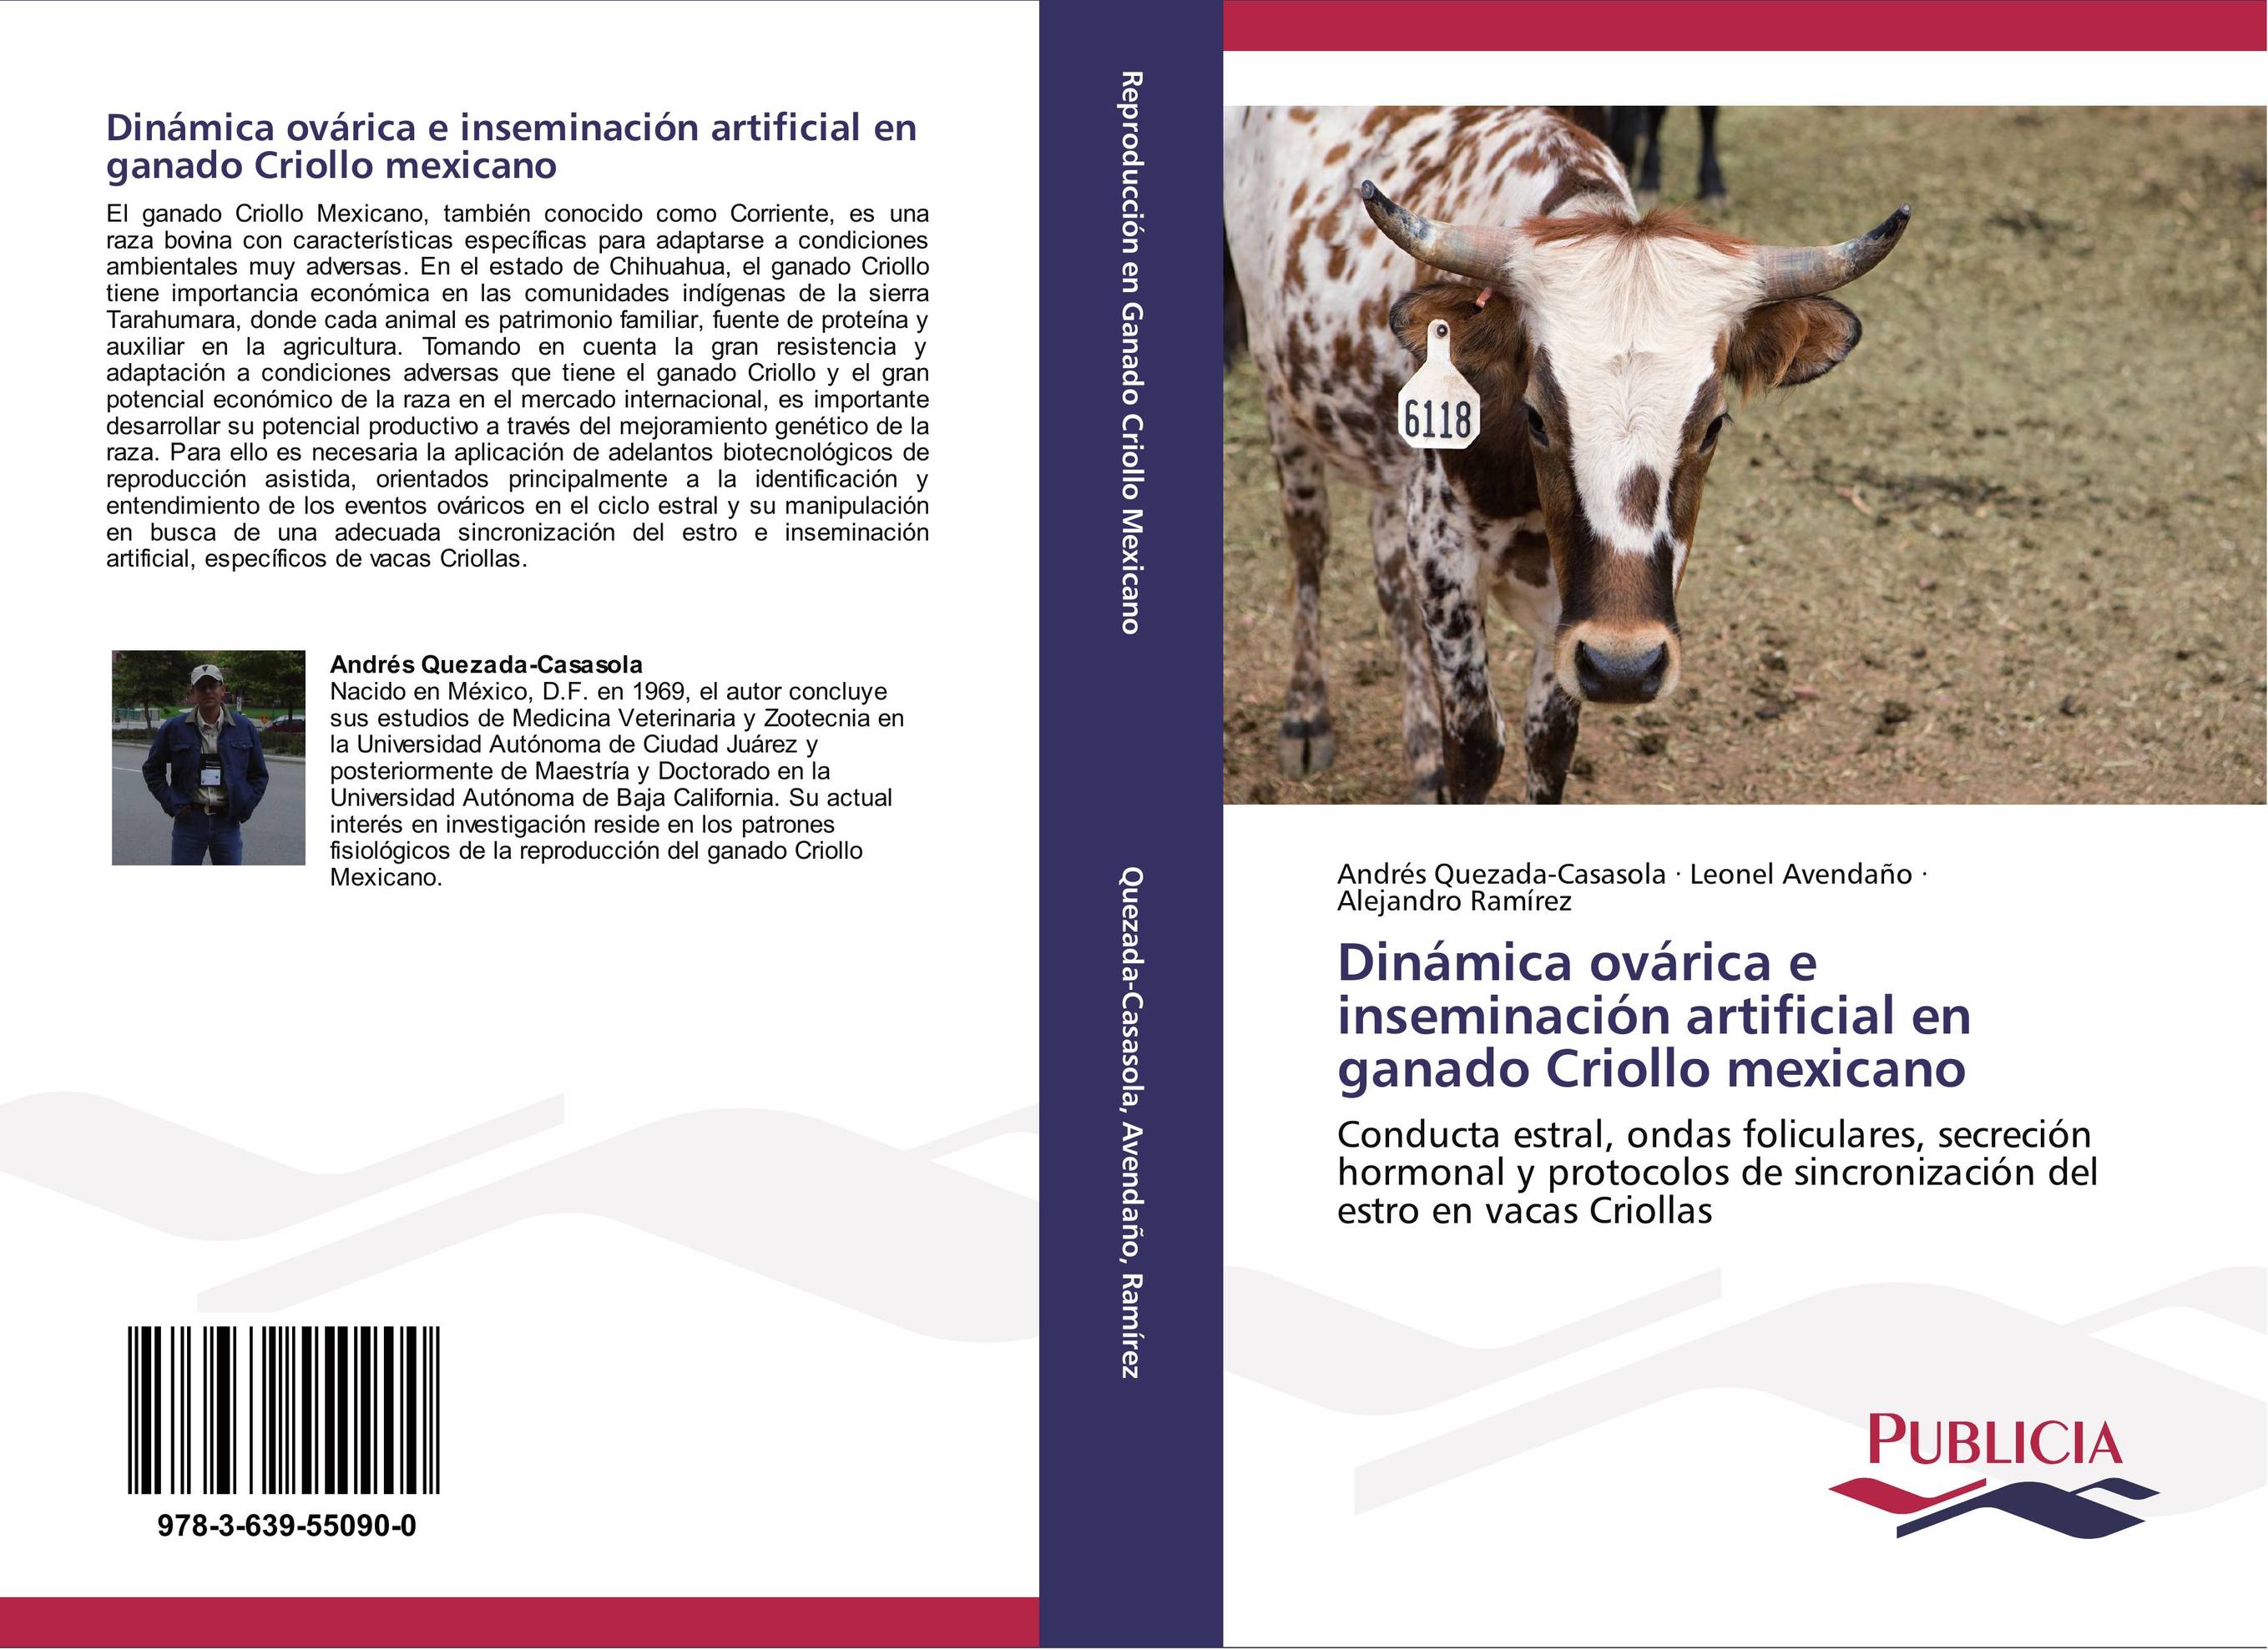 Dinámica ovárica e inseminación artificial en ganado Criollo mexicano